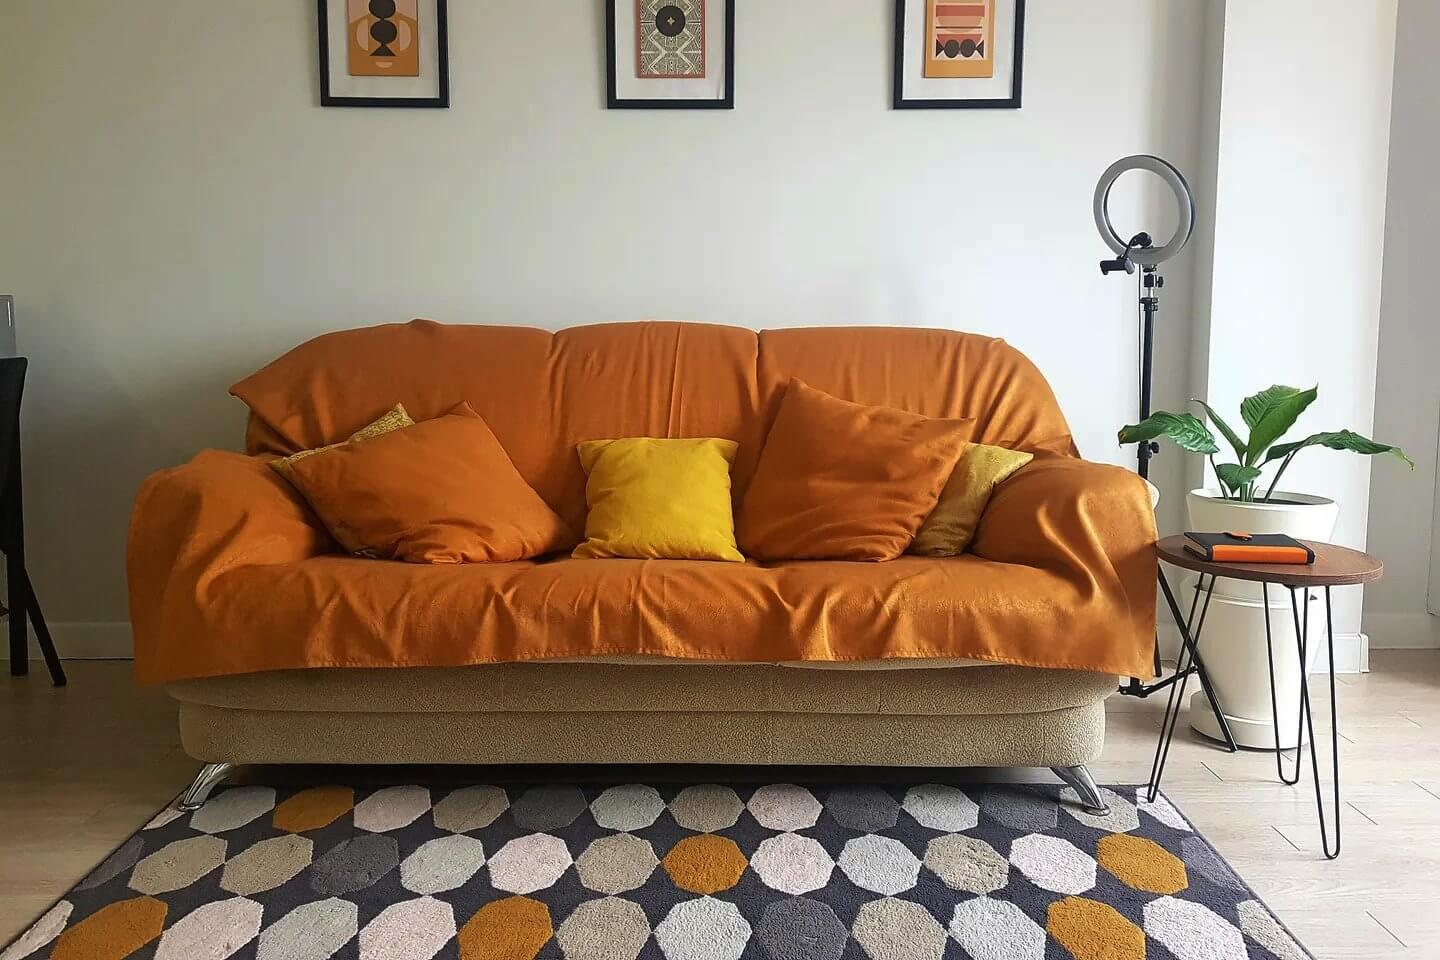 Красивый диван с ярким оранжевым покрывалом.